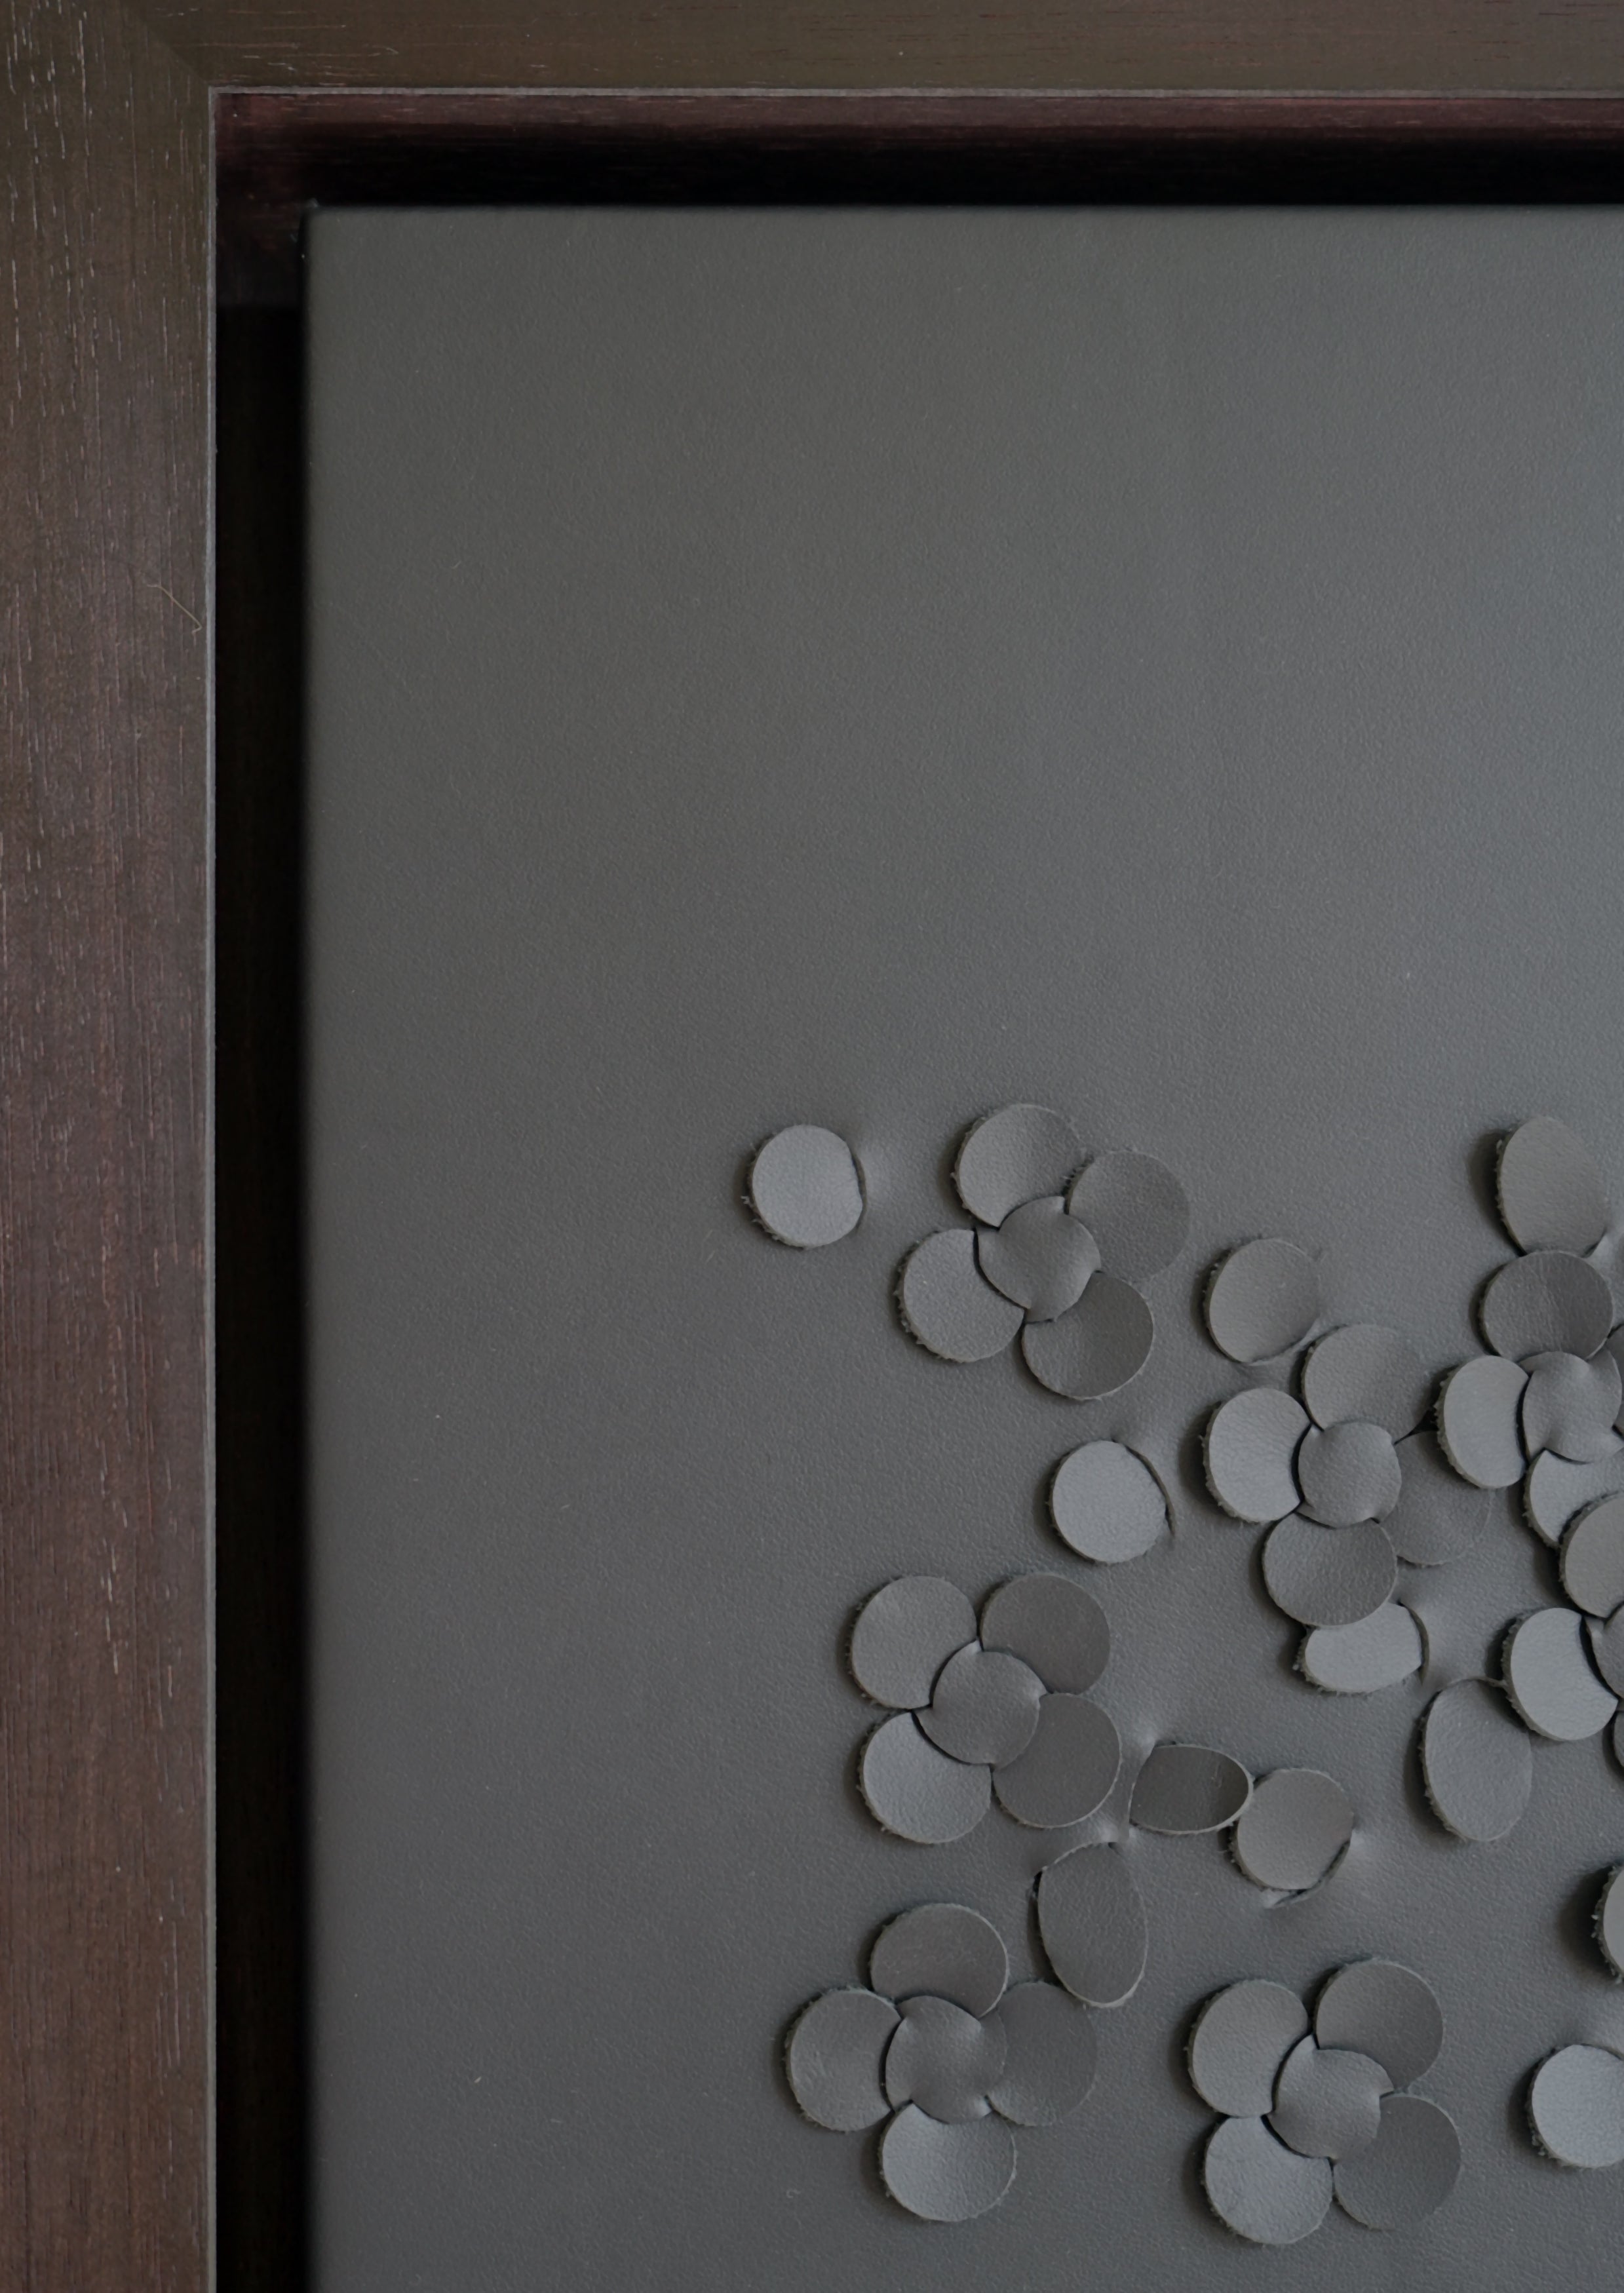 Blossom:

Ein skulpturales 3D-Wandkunstwerk, das von Louise Heighes entworfen und aus zwei Schichten grauen Leders zusammengefügt wurde.
Die Maße sind 50 x 30 Zoll oder 127 x 77 cm.
 
Dieses Wandkunstwerk ist inspiriert vom plötzlichen